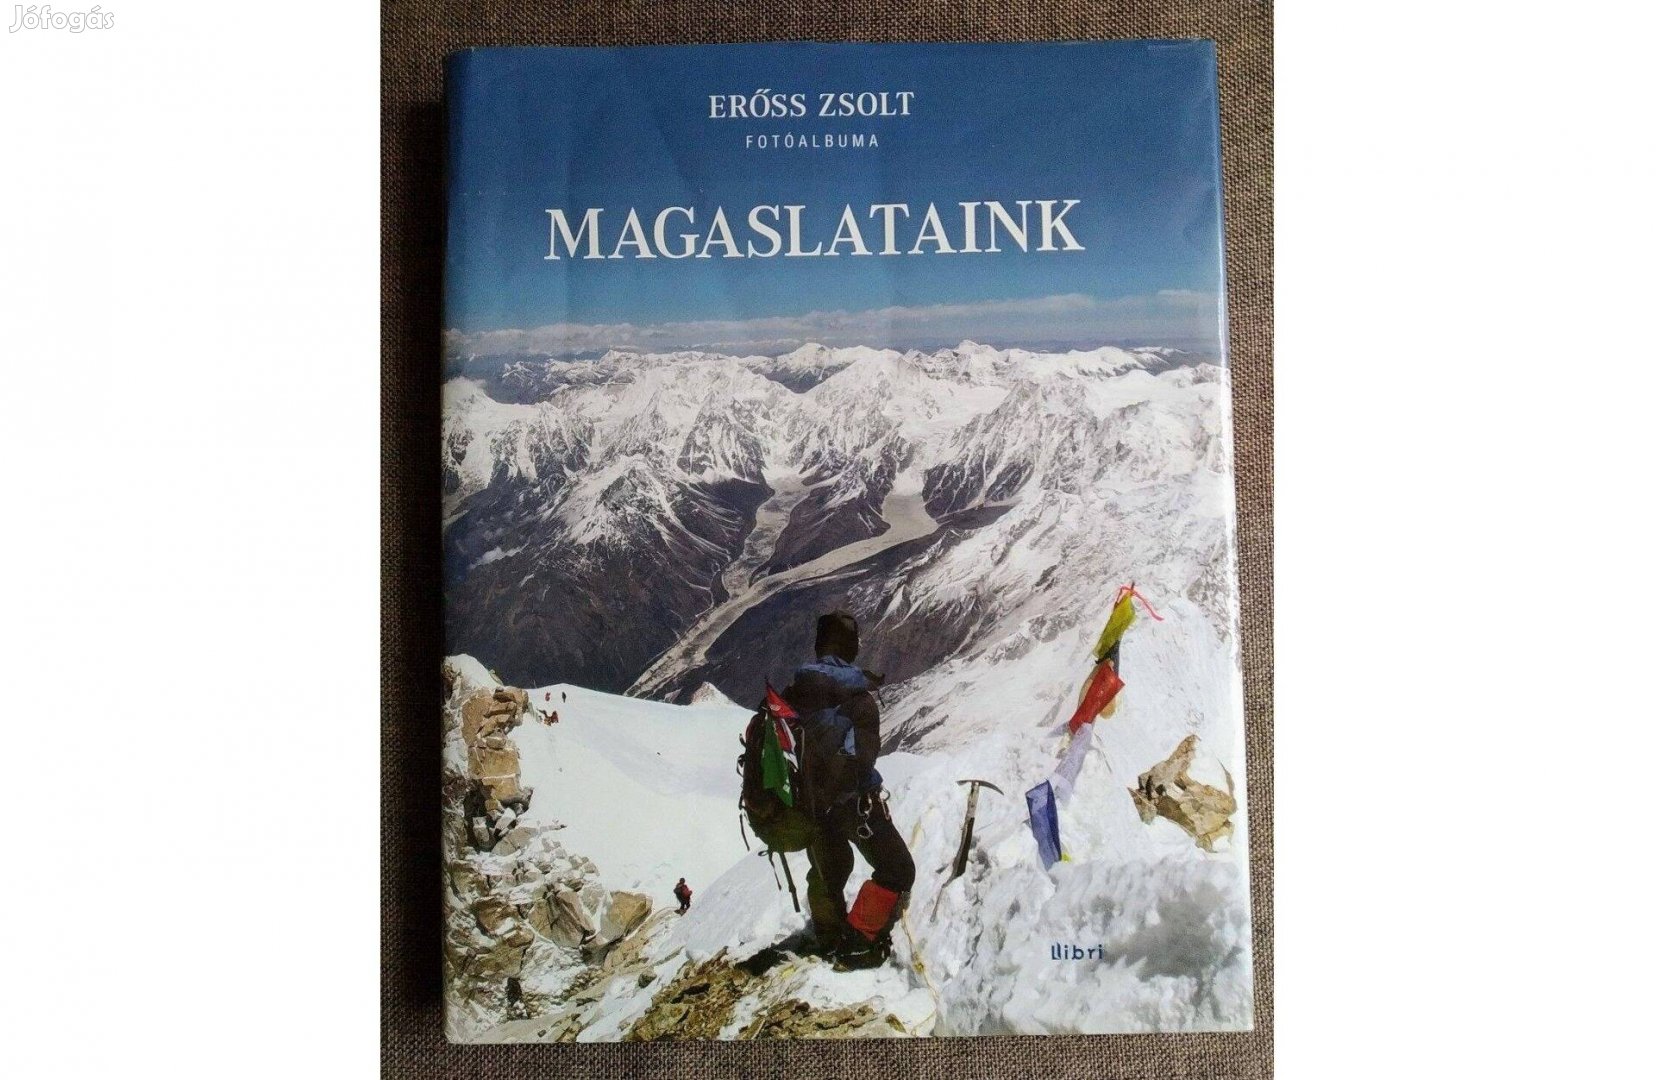 Magaslataink Fotóalbum Erőss Zsolt Libri Könyvkiadó, 2012